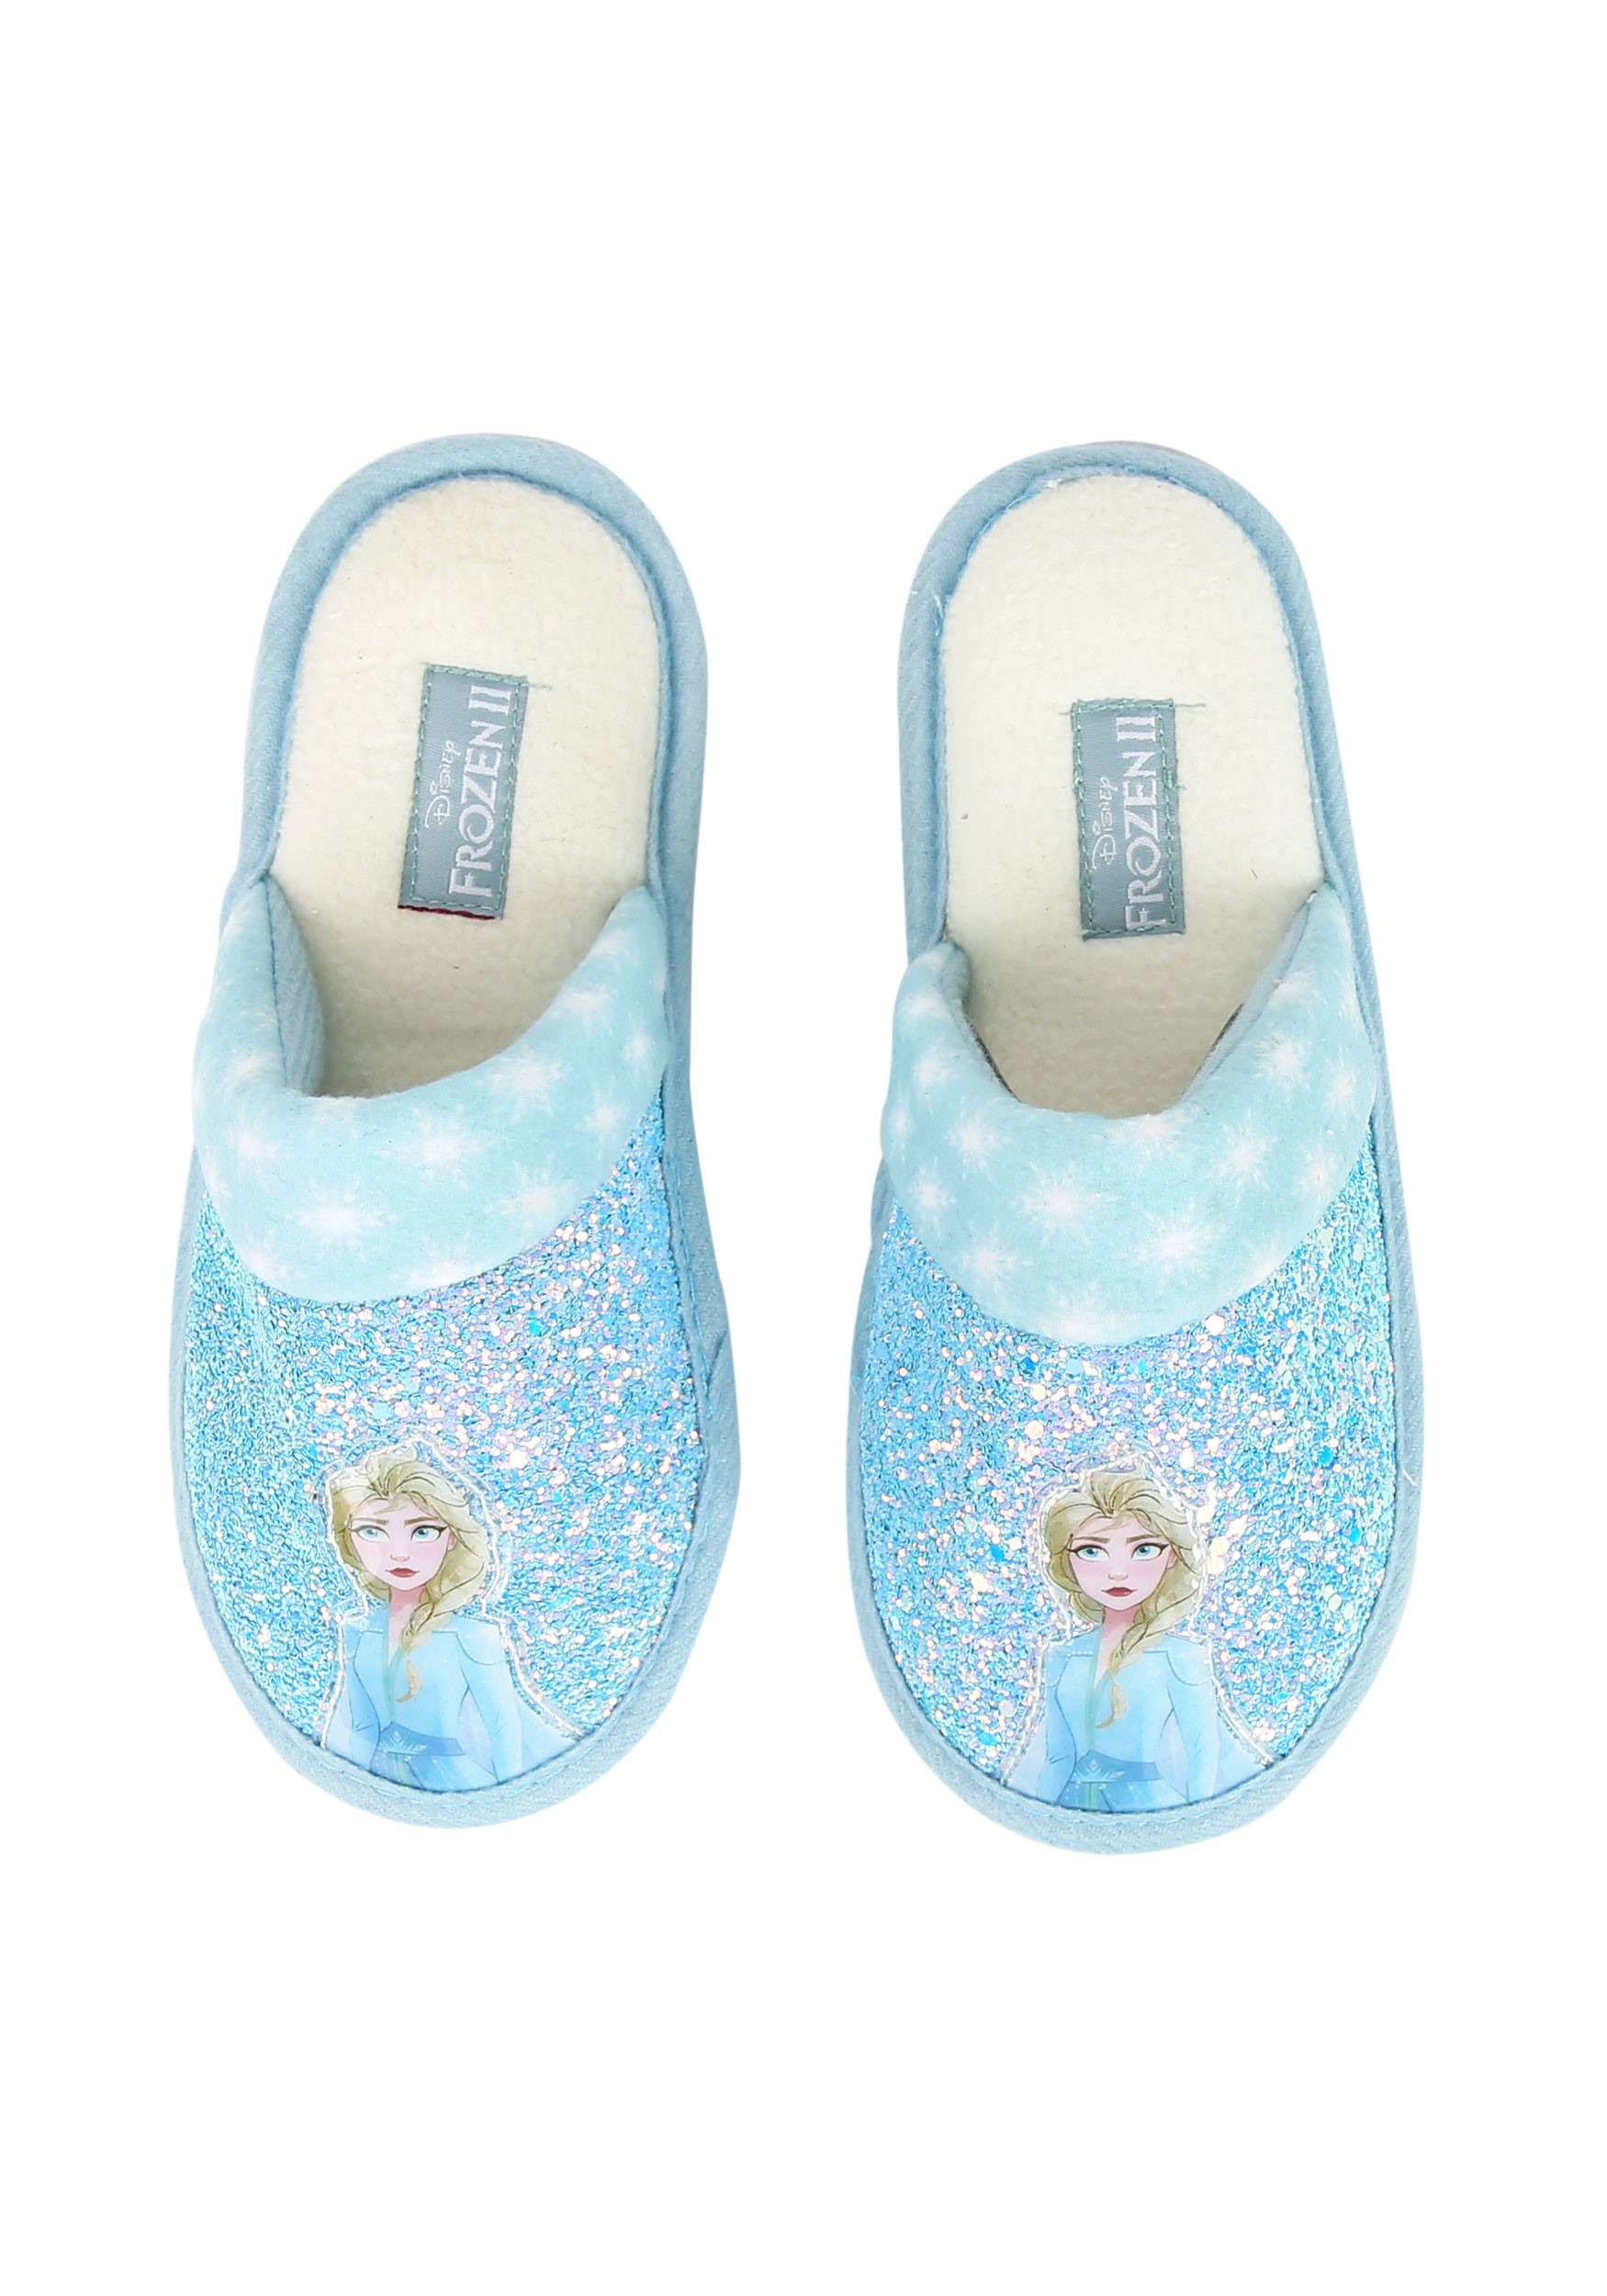 Frozen 2 Elsa Slippers for Girls